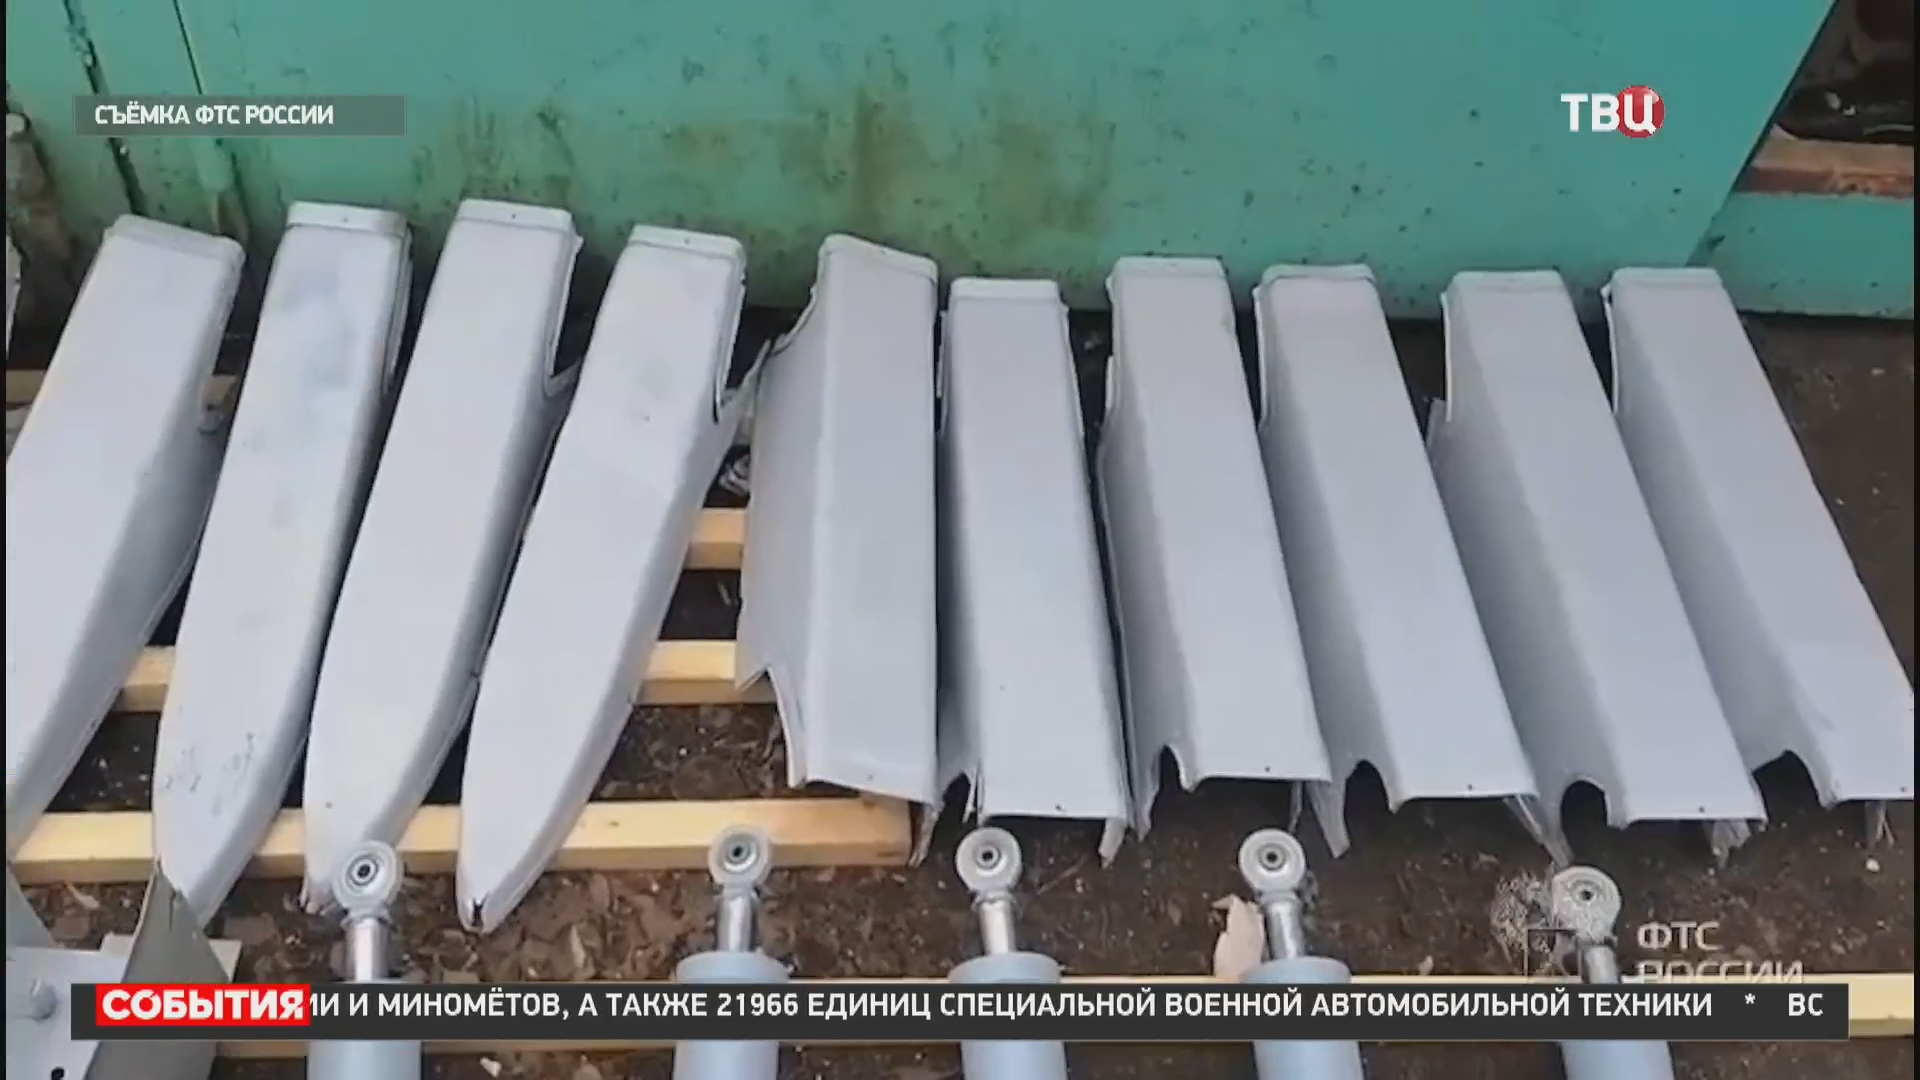 Таможня пресекла вывоз держателей авиационных ракет на Украину / События на ТВЦ